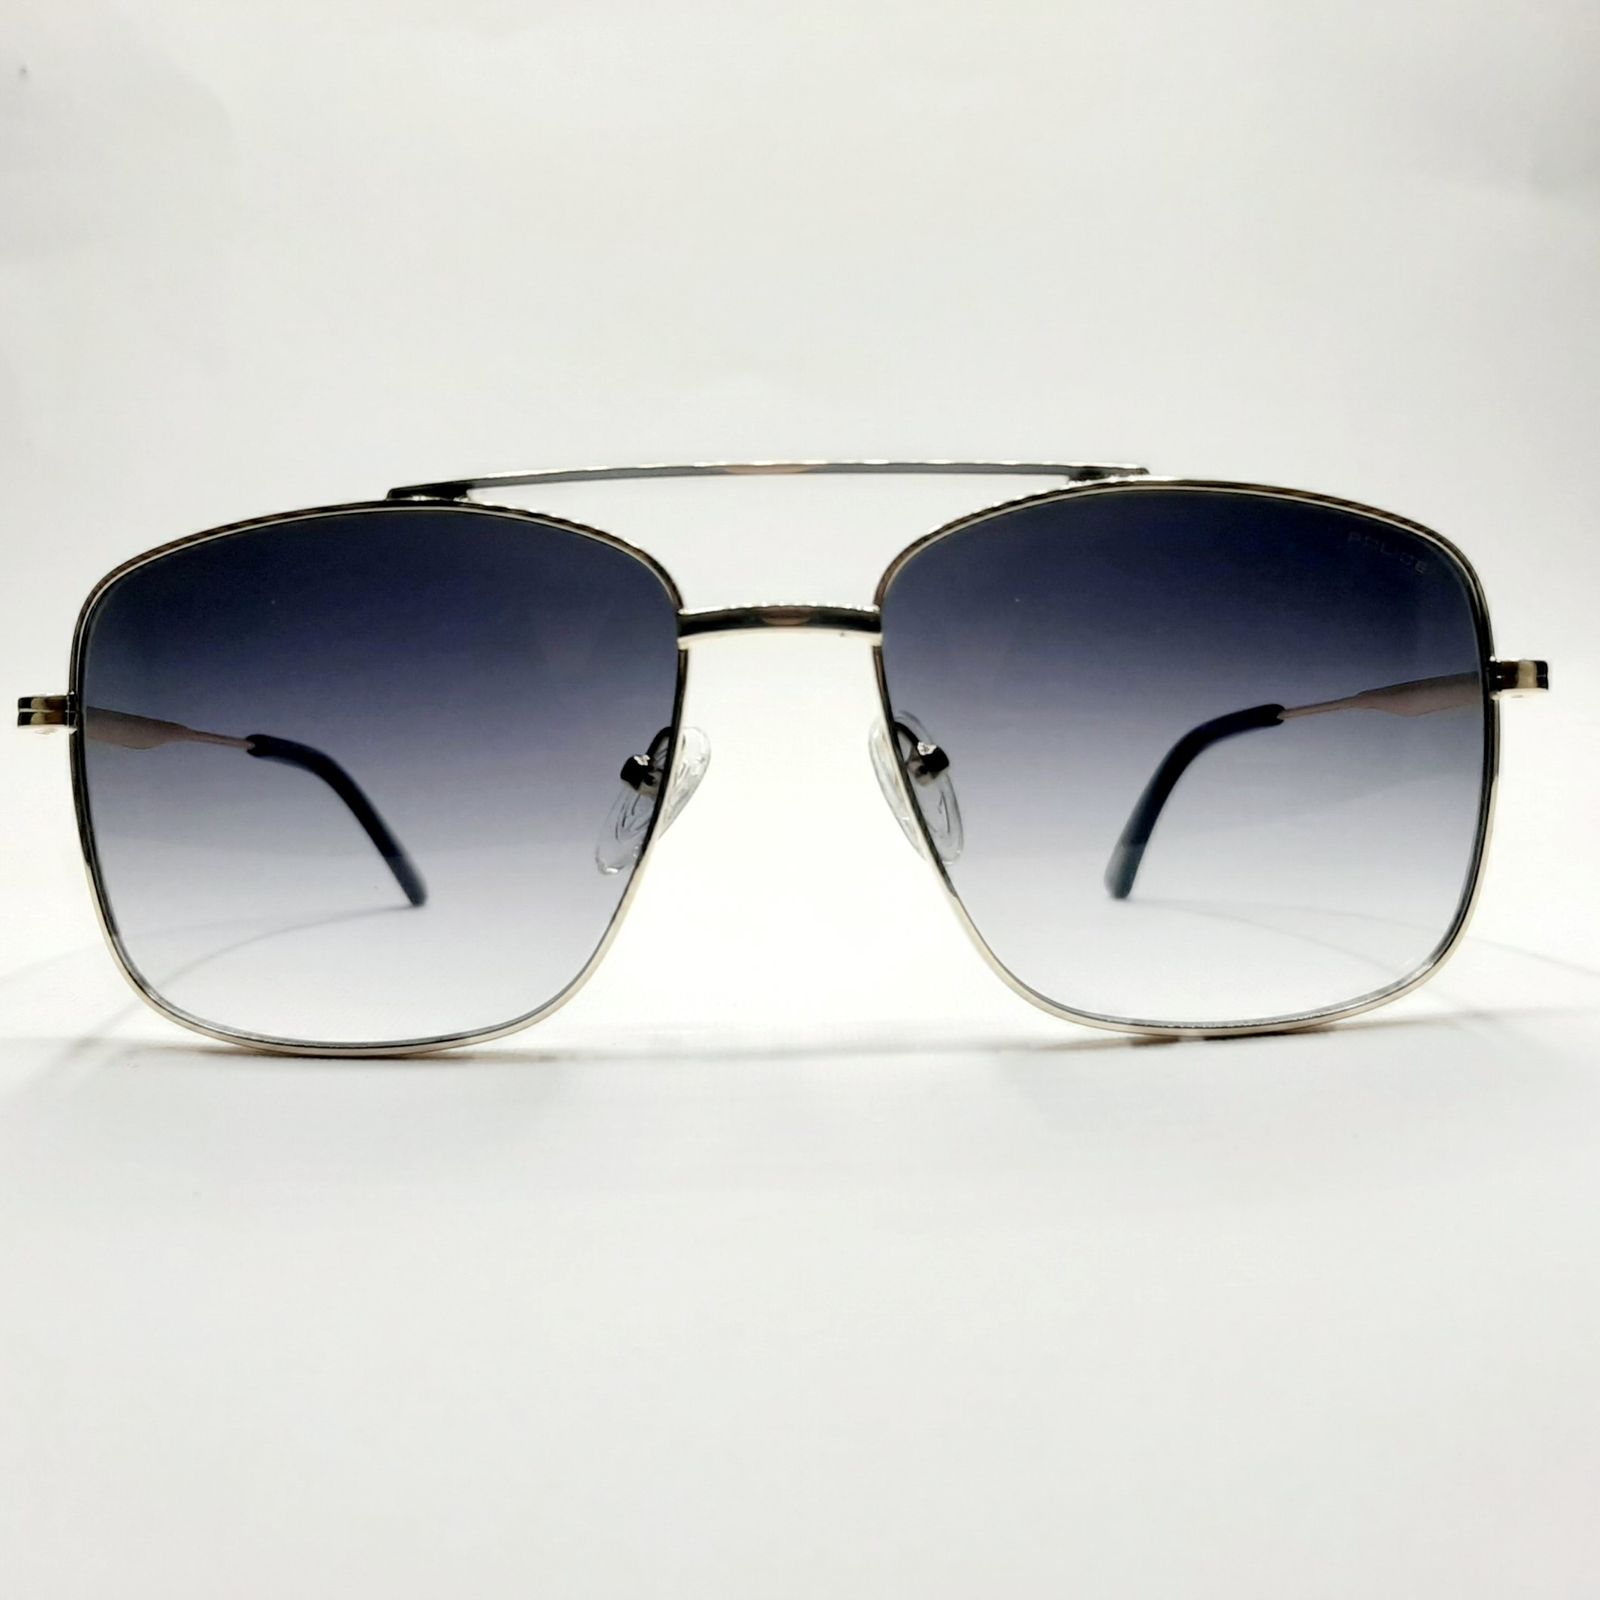 عینک آفتابی پلیس مدل SPL601c1 -  - 2